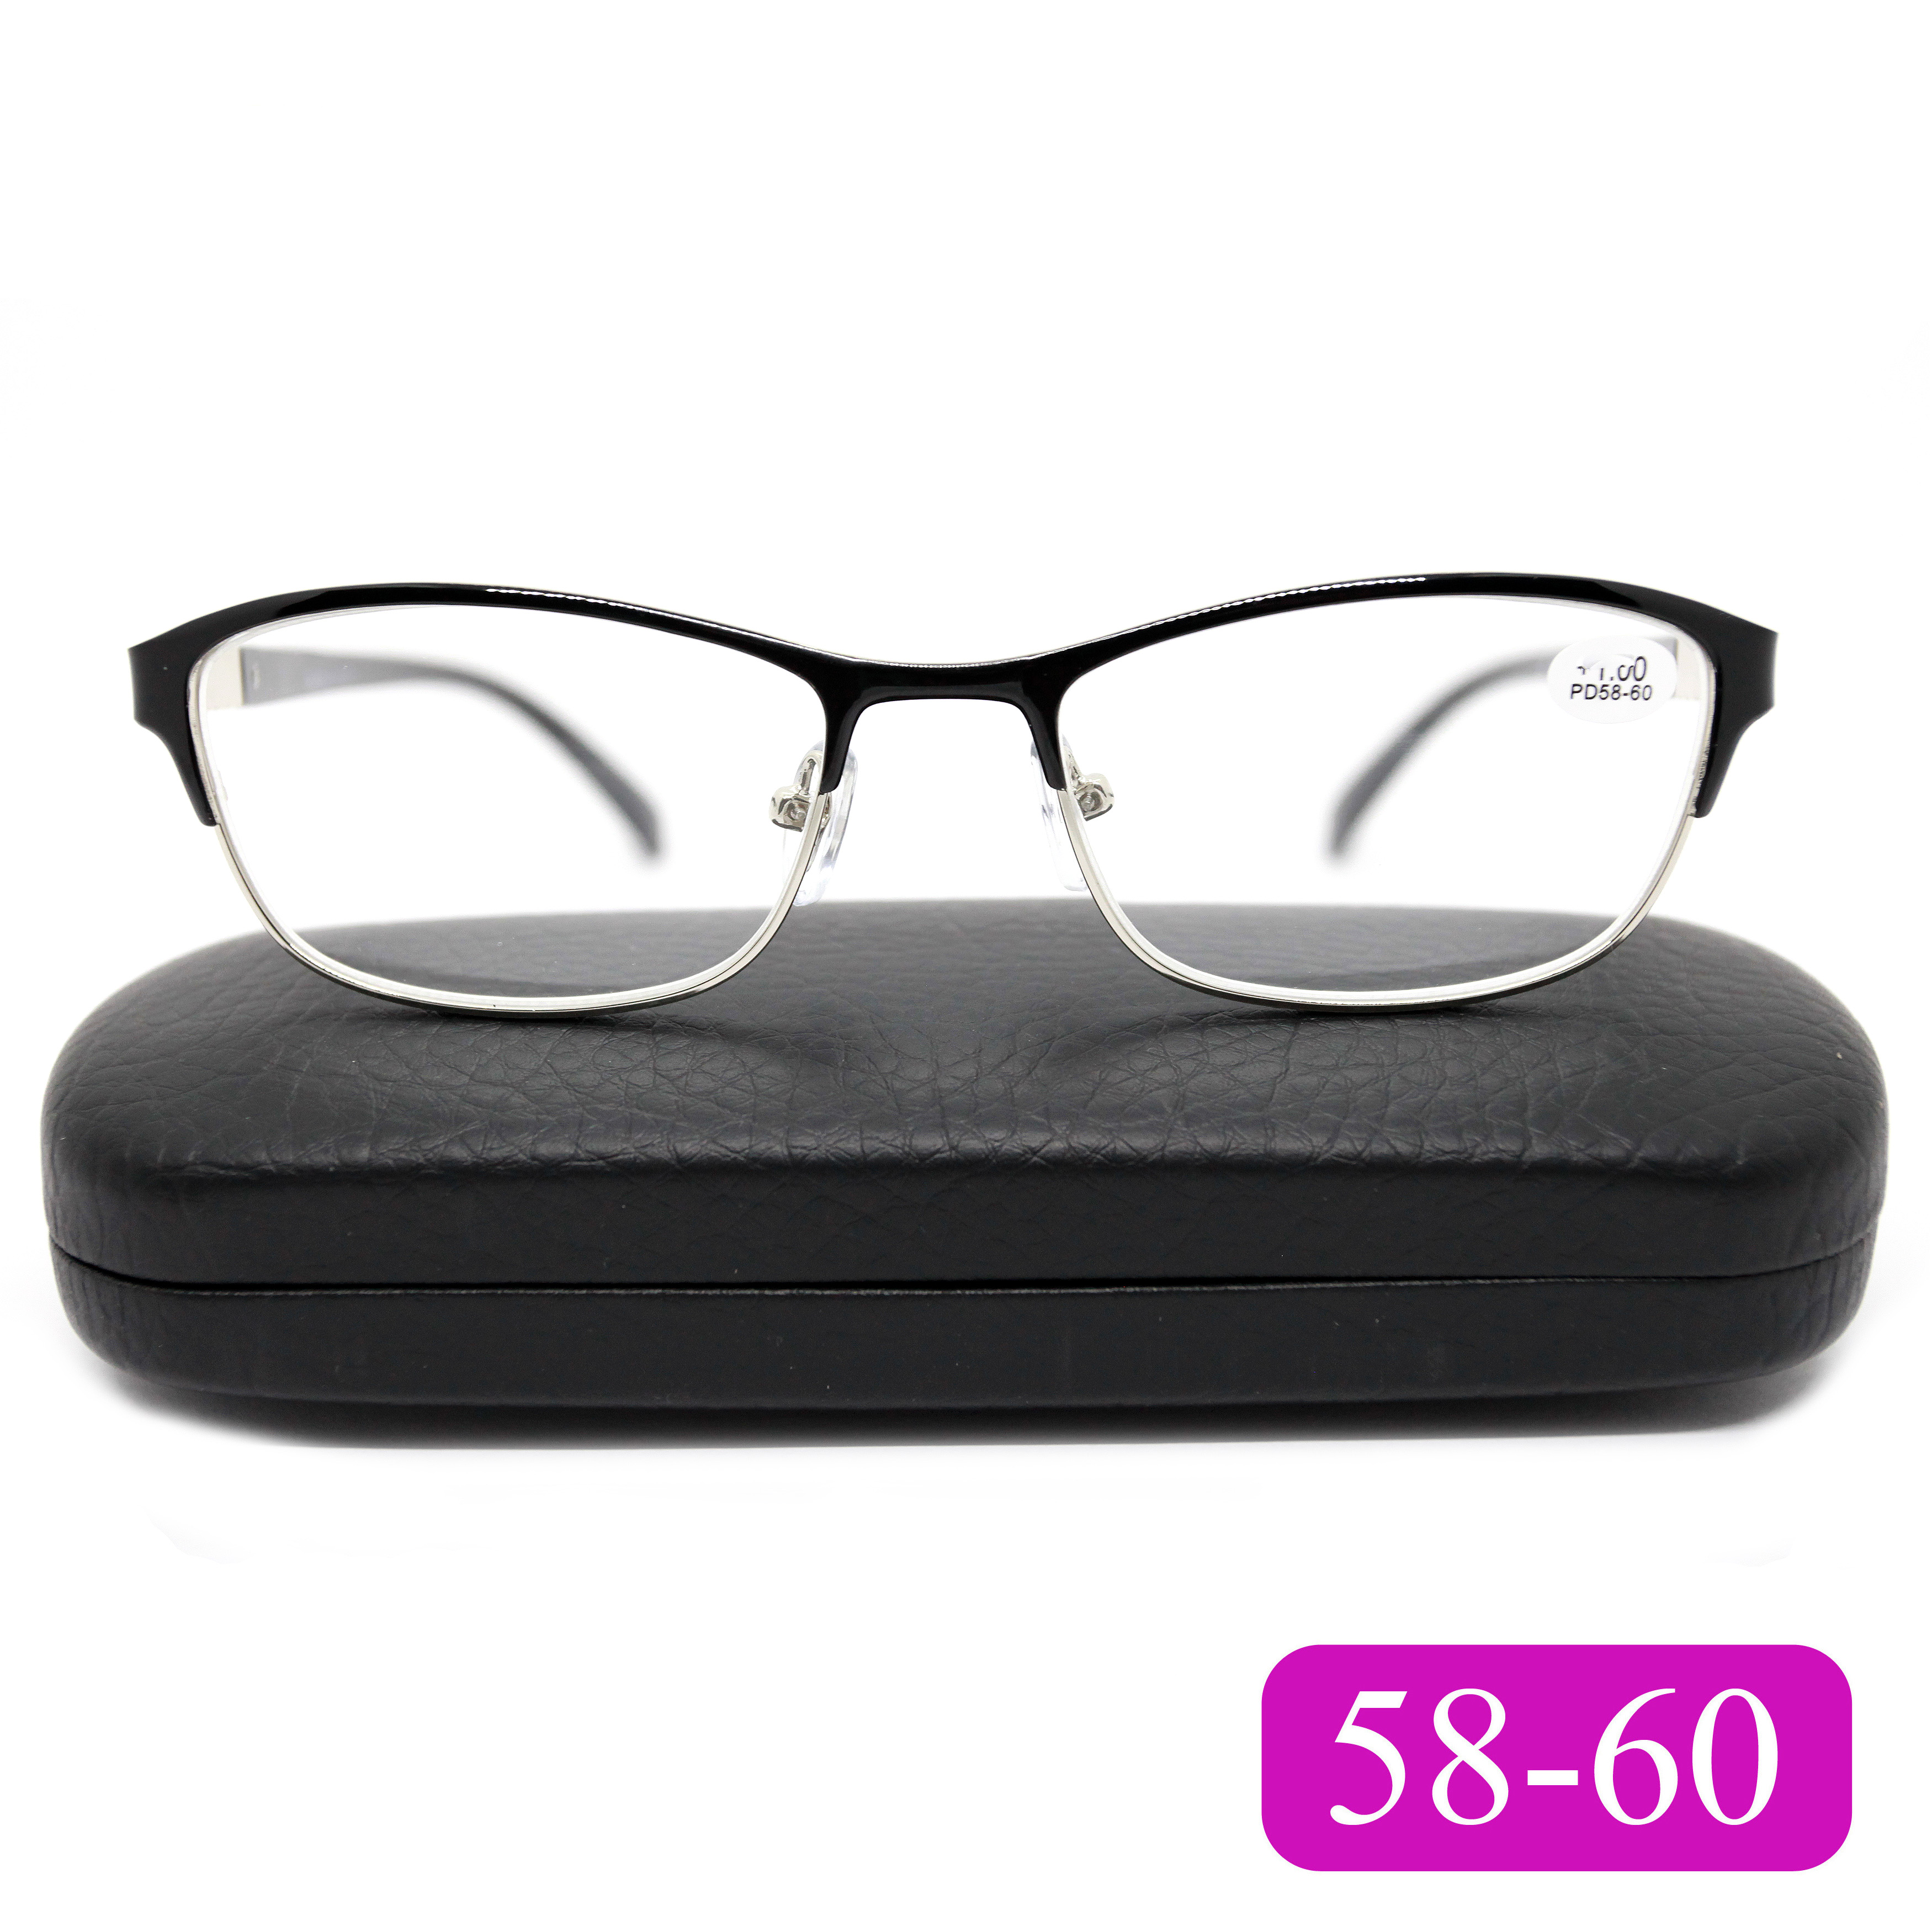 Готовые очки Glodiatr 1913 +2,75, c футляром, цвет черный, РЦ 58-60